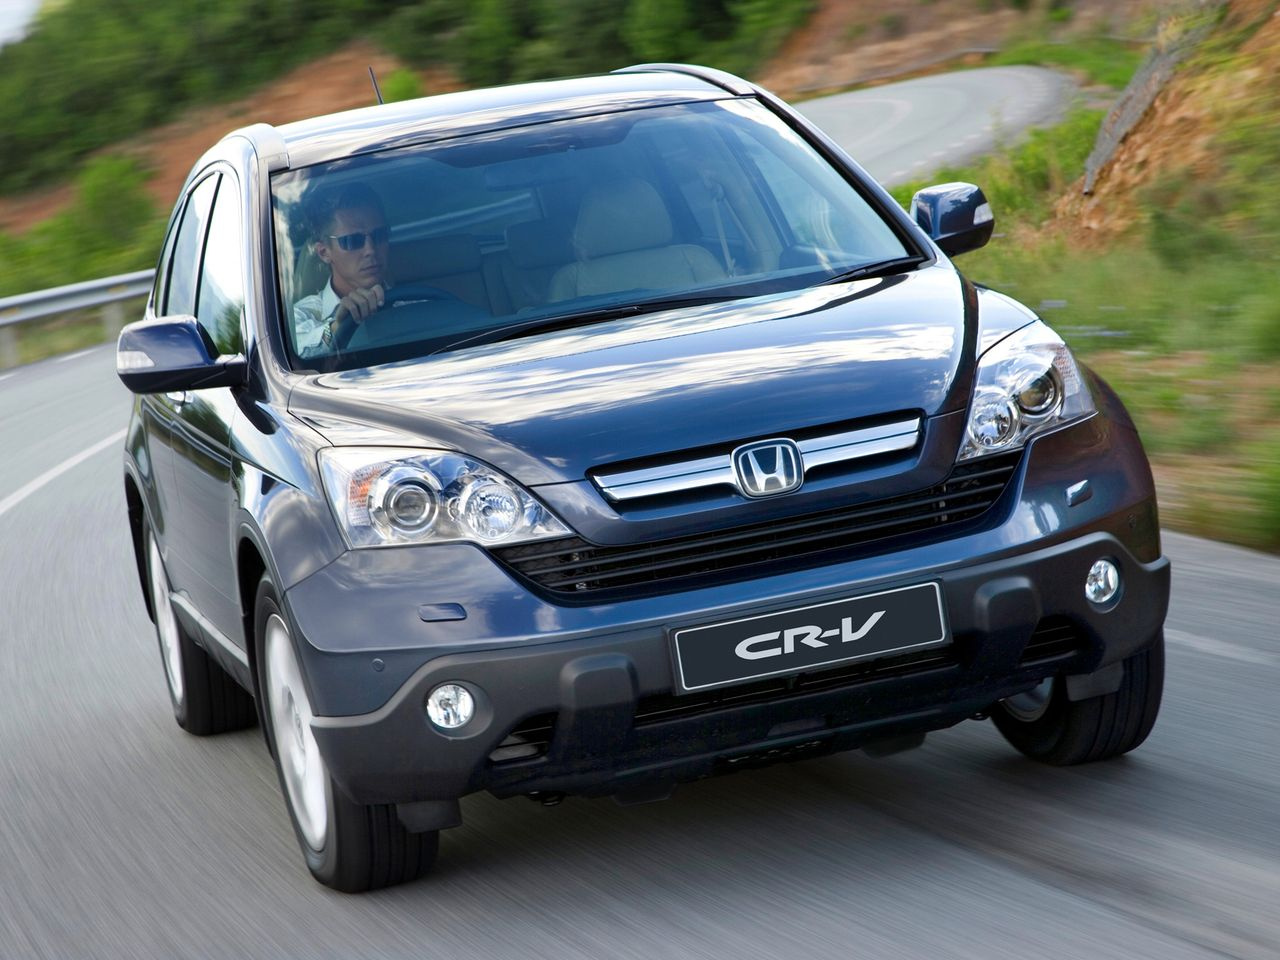 Honda CR-V 2006–2012 годов, равно как и следующее поколение (2018–2018 годы), прекрасно показывают себя в эксплуатации. В Британии продавали машины английской сборки, которые поставлялись в Россию наряду с американскими версиями с левым рулем, а также праворульными машинами из Японии